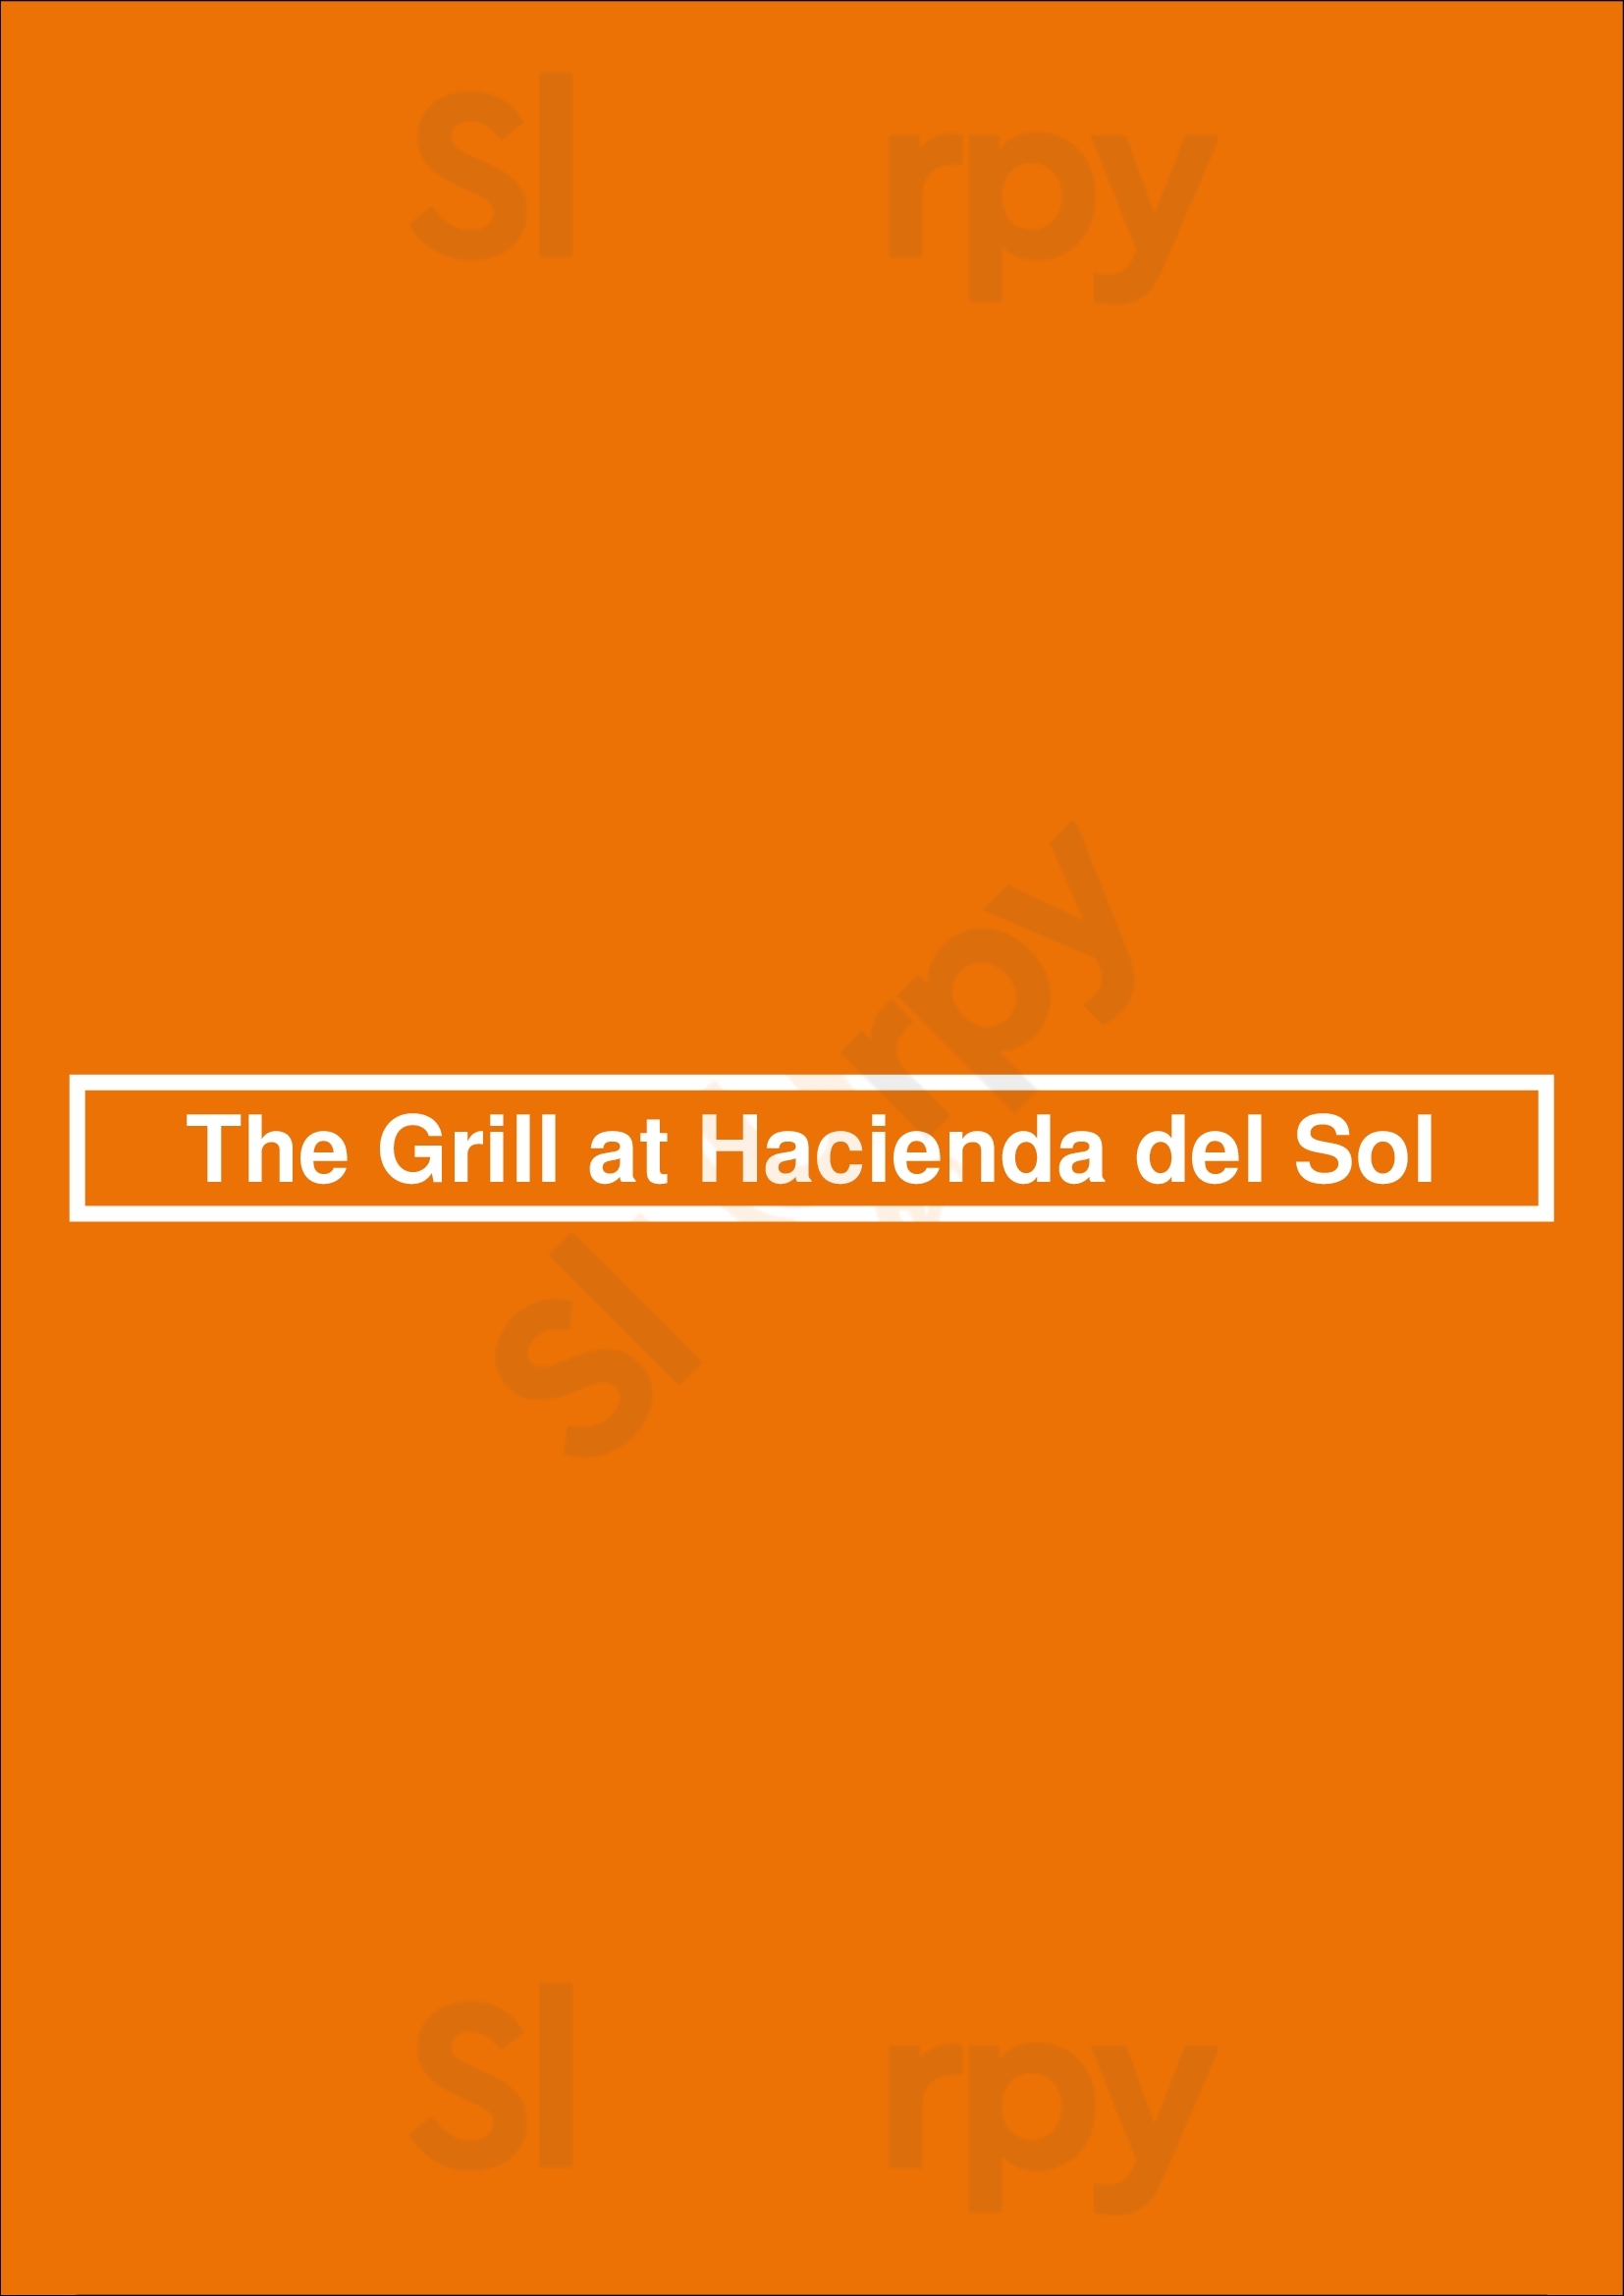 The Grill At Hacienda Del Sol Tucson Menu - 1